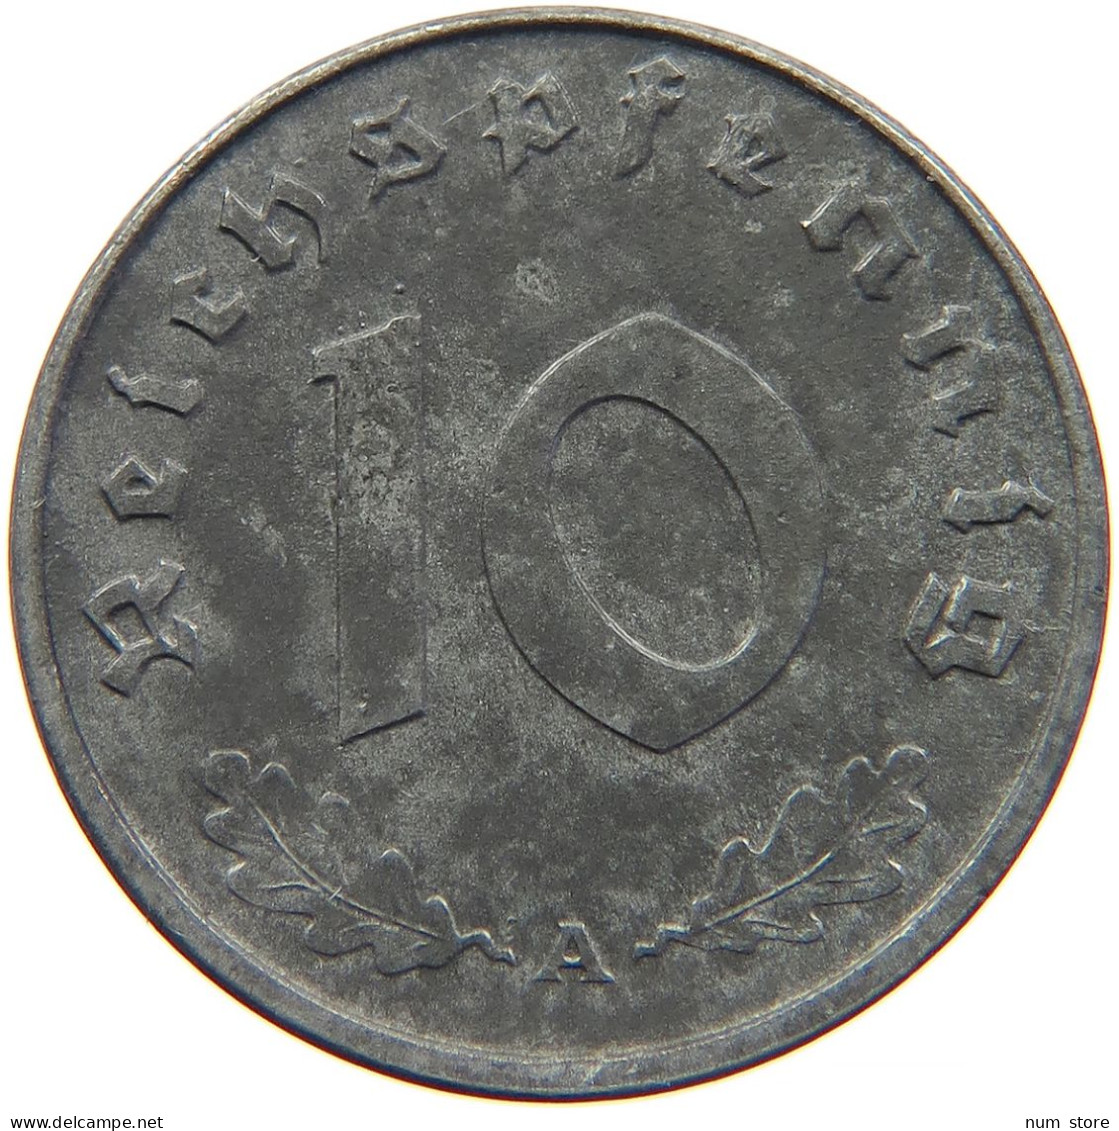 GERMANY 10 REICHSPFENNIG 1943 A #s095 0065 - 10 Reichspfennig